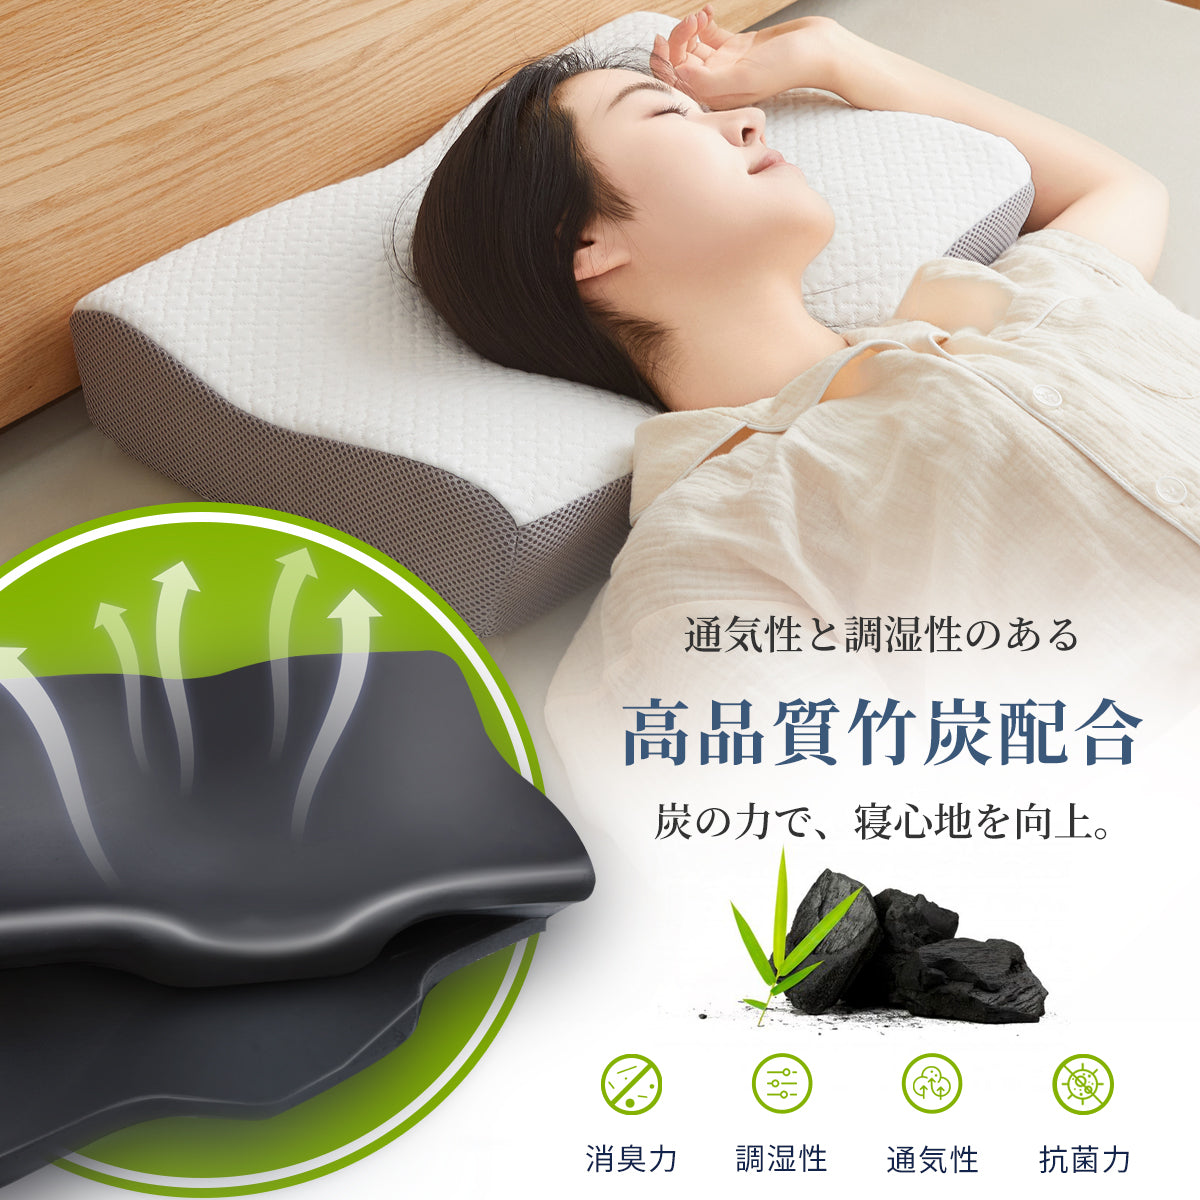 Sleepeach 枕 まくら 低反発 低反発枕 pillow ジャストフィット カバー